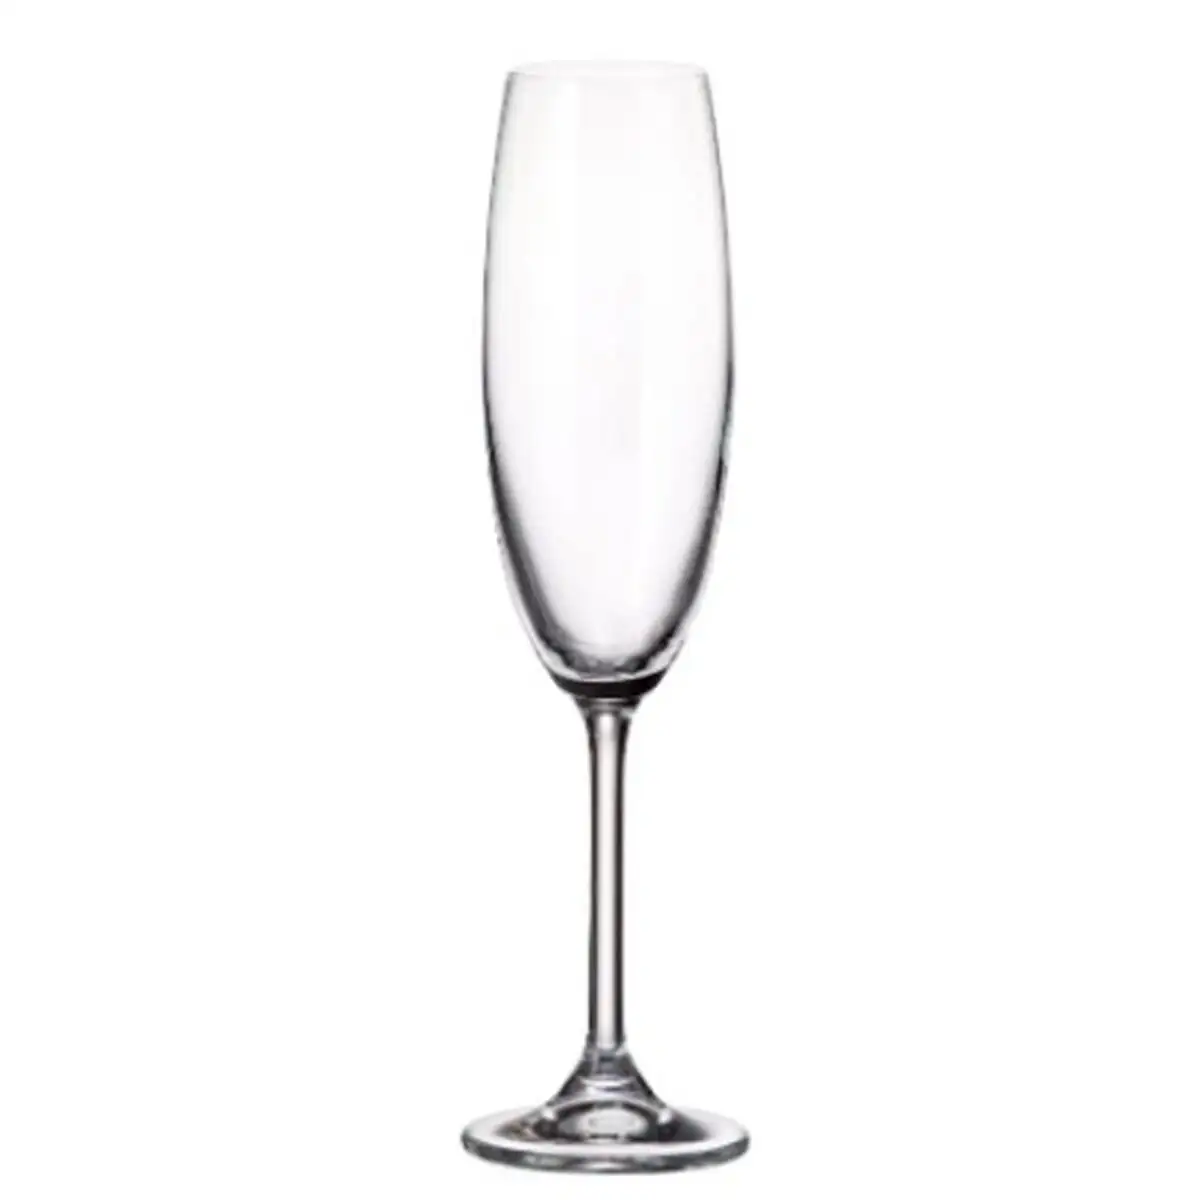 Set de verres bohemia crystal clara 220 ml champagne 6 unites_9996. Bienvenue chez DIAYTAR SENEGAL - Où Chaque Objet a son Histoire. Découvrez notre sélection méticuleuse et choisissez des articles qui racontent l'âme du Sénégal.